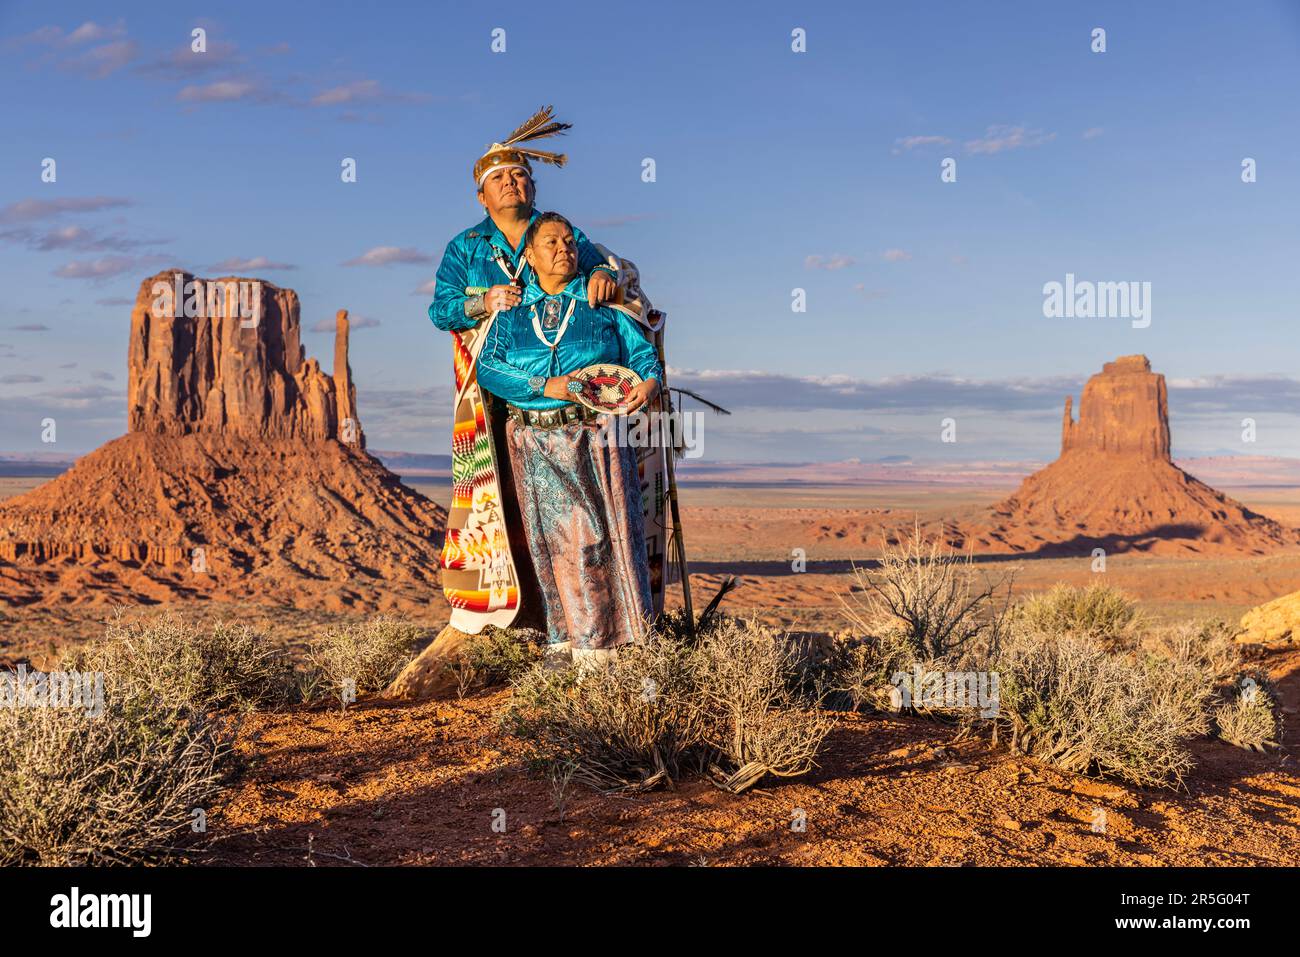 Pareja de indios navajos americanos posando durante la puesta de sol en Monument Valley Navajo Tribal Park, Arizona, Estados Unidos Foto de stock